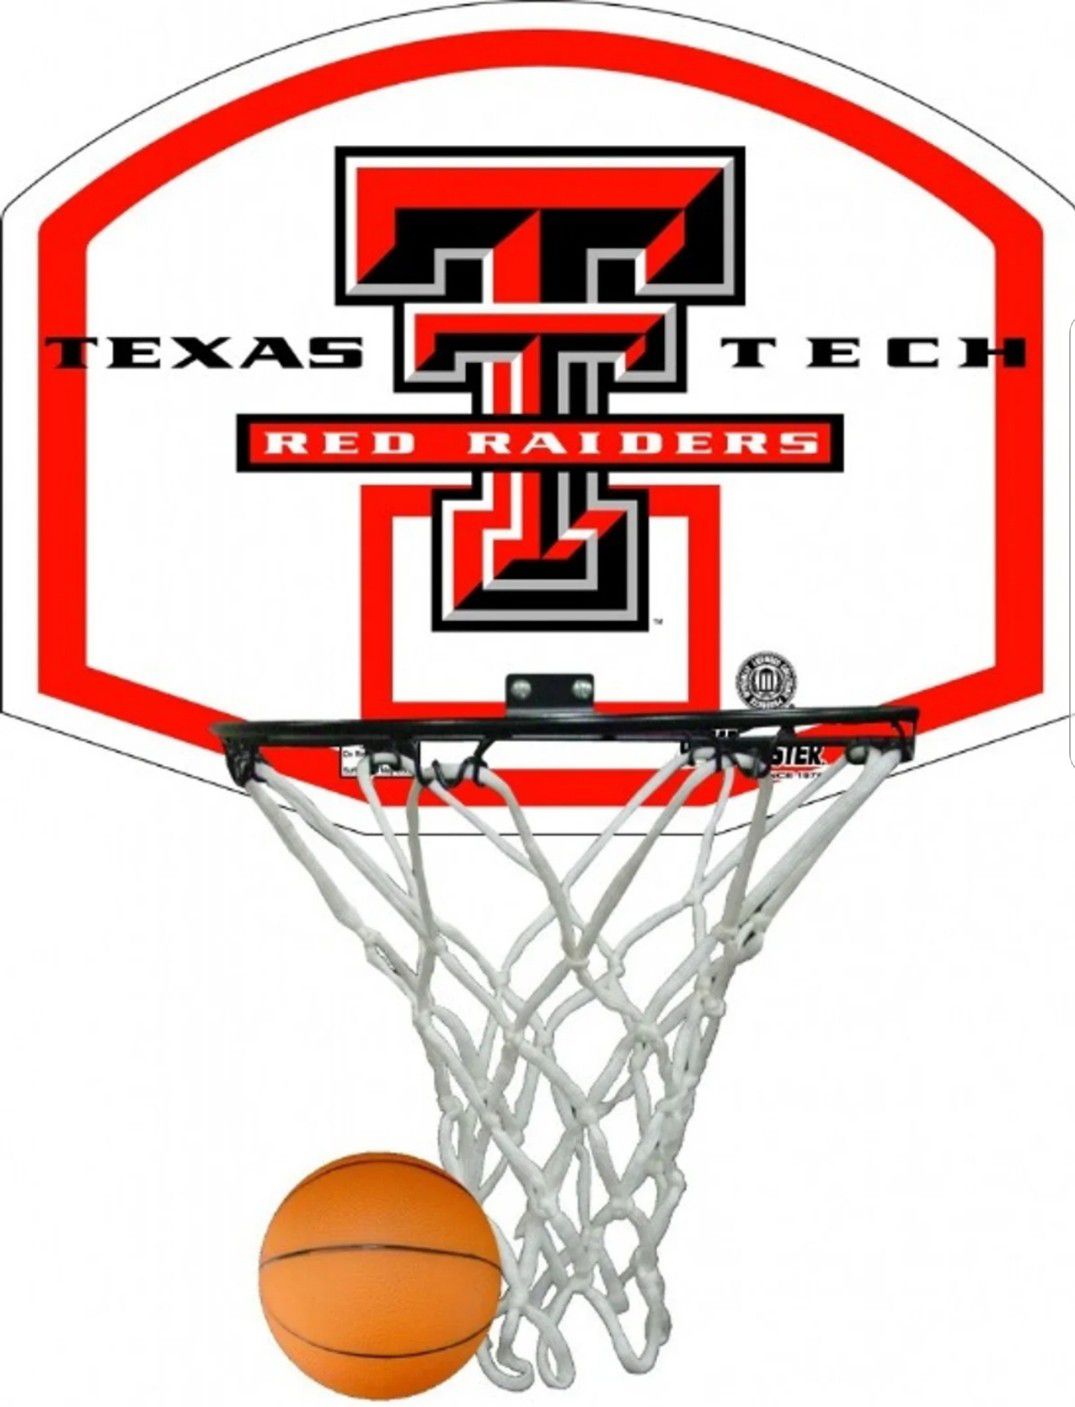 Texas Tech Raiders Basketball Game Rim, Net, and Ball